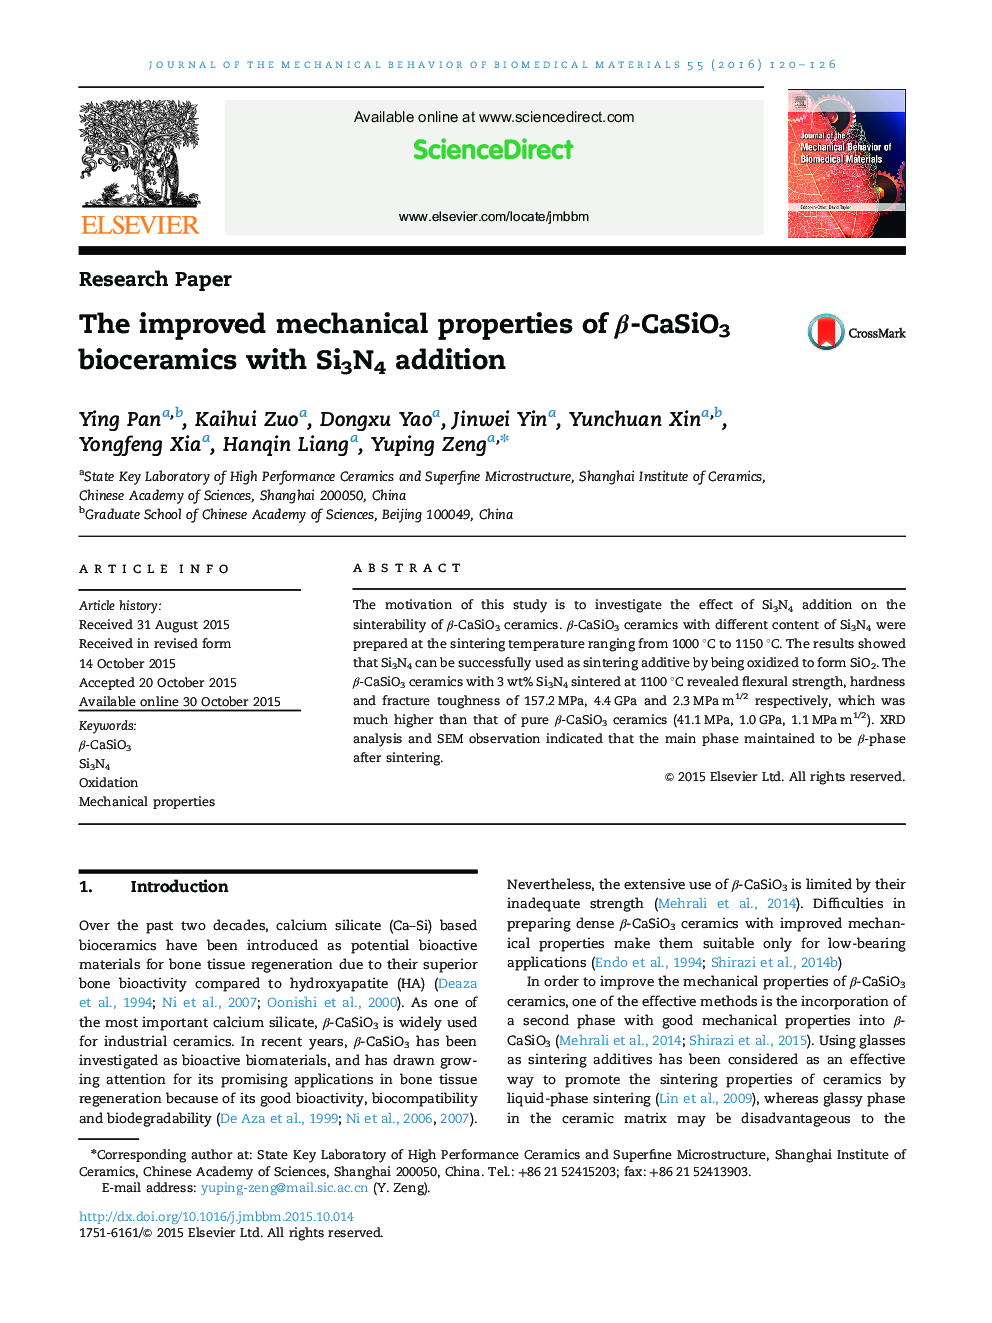 خواص مکانیکی بهبود بیوسرامیک β-CaSiO3 با افزودن Si3N4